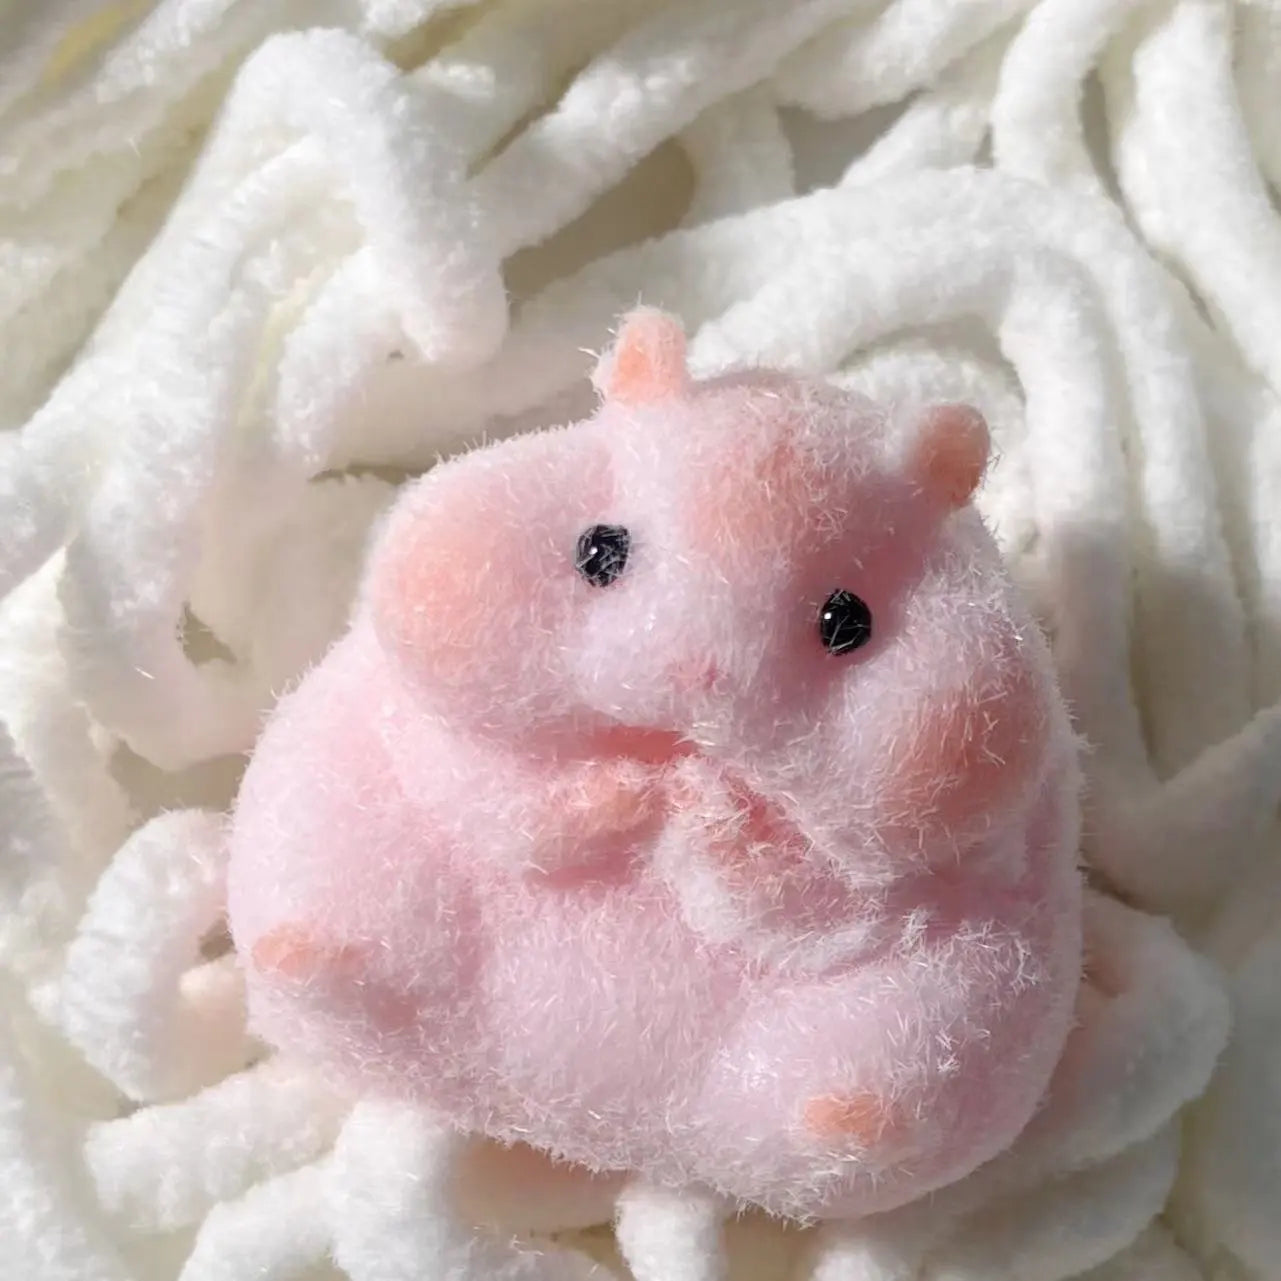 Squishy Hamster Toy - Stress Zéro